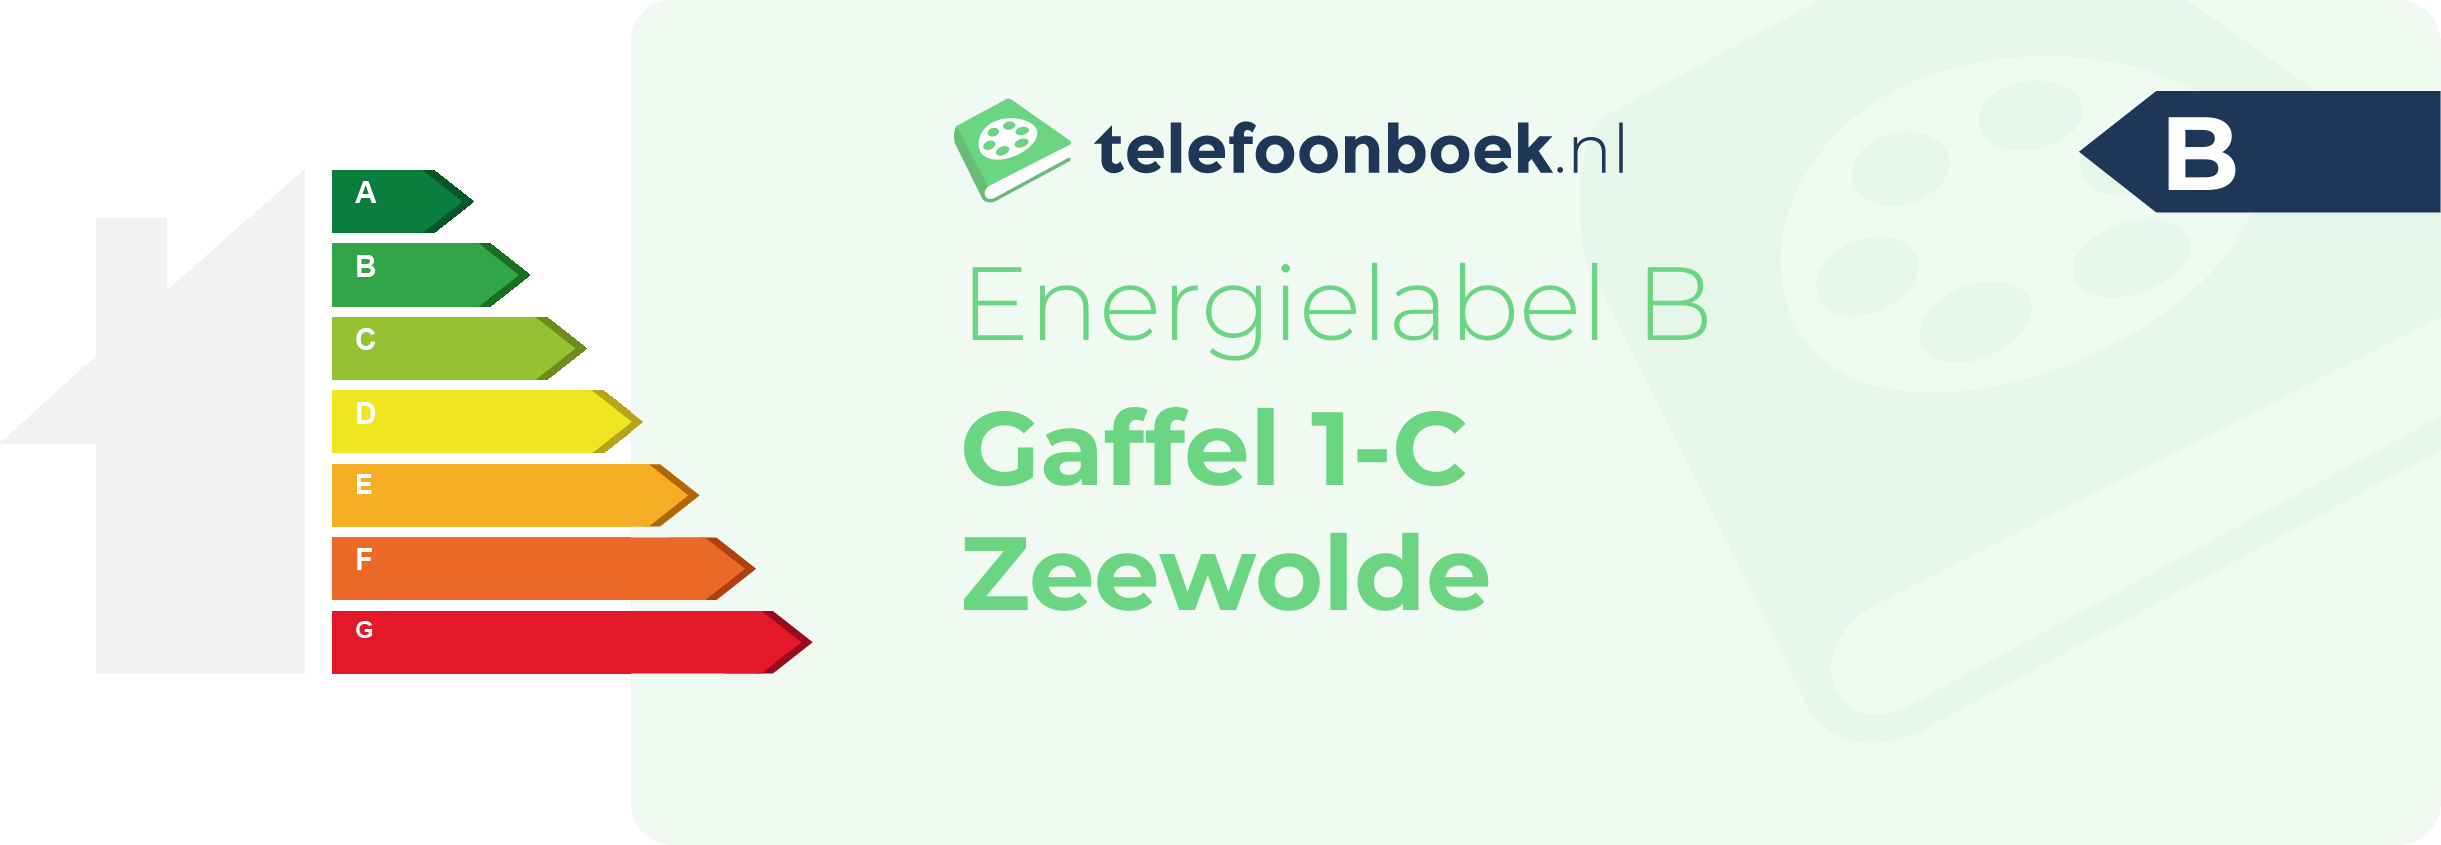 Energielabel Gaffel 1-C Zeewolde